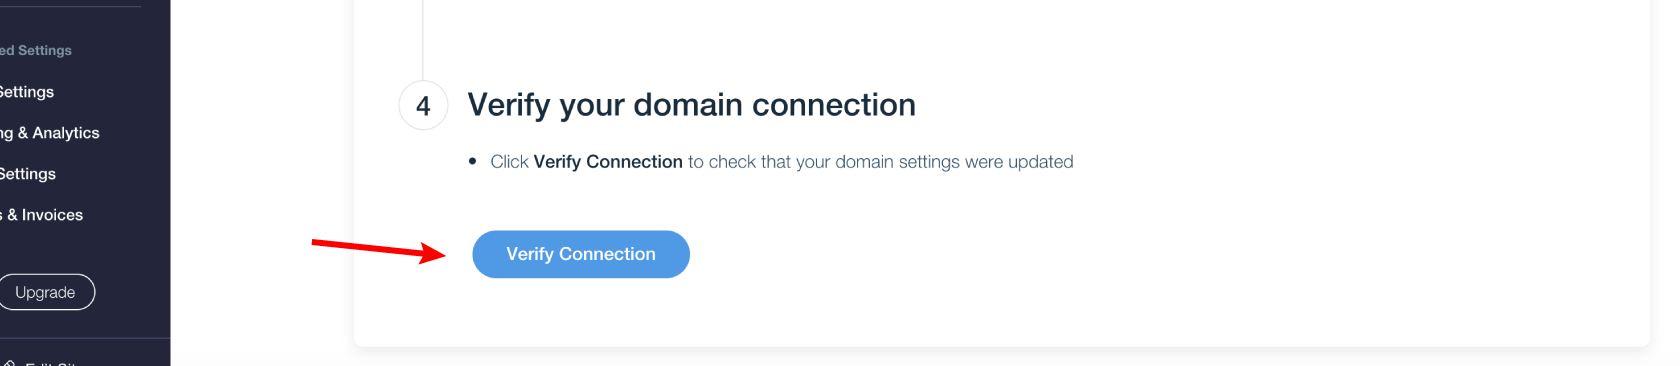 Verify Domain Connection